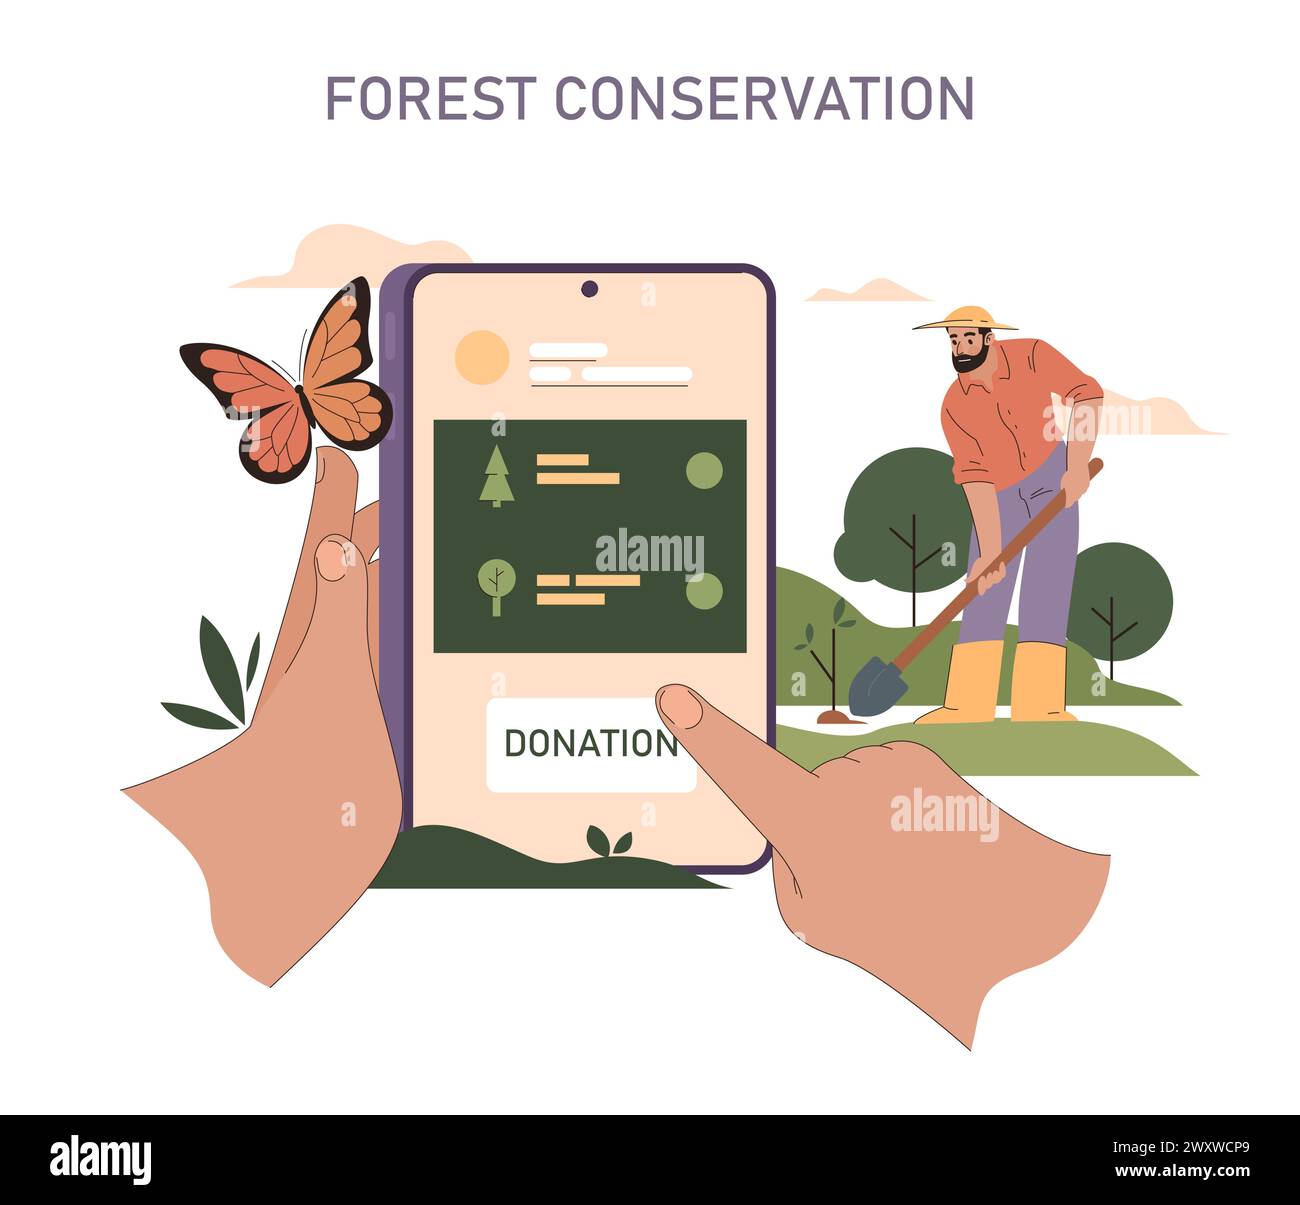 Insieme di sostenibilità. Piattaforma di donazione digitale a sostegno della crescita forestale. Sforzi di rimboschimento guidati dall'interazione con la comunità. Farfalla significa il delicato equilibrio della natura. Illustrazione vettoriale. Illustrazione Vettoriale